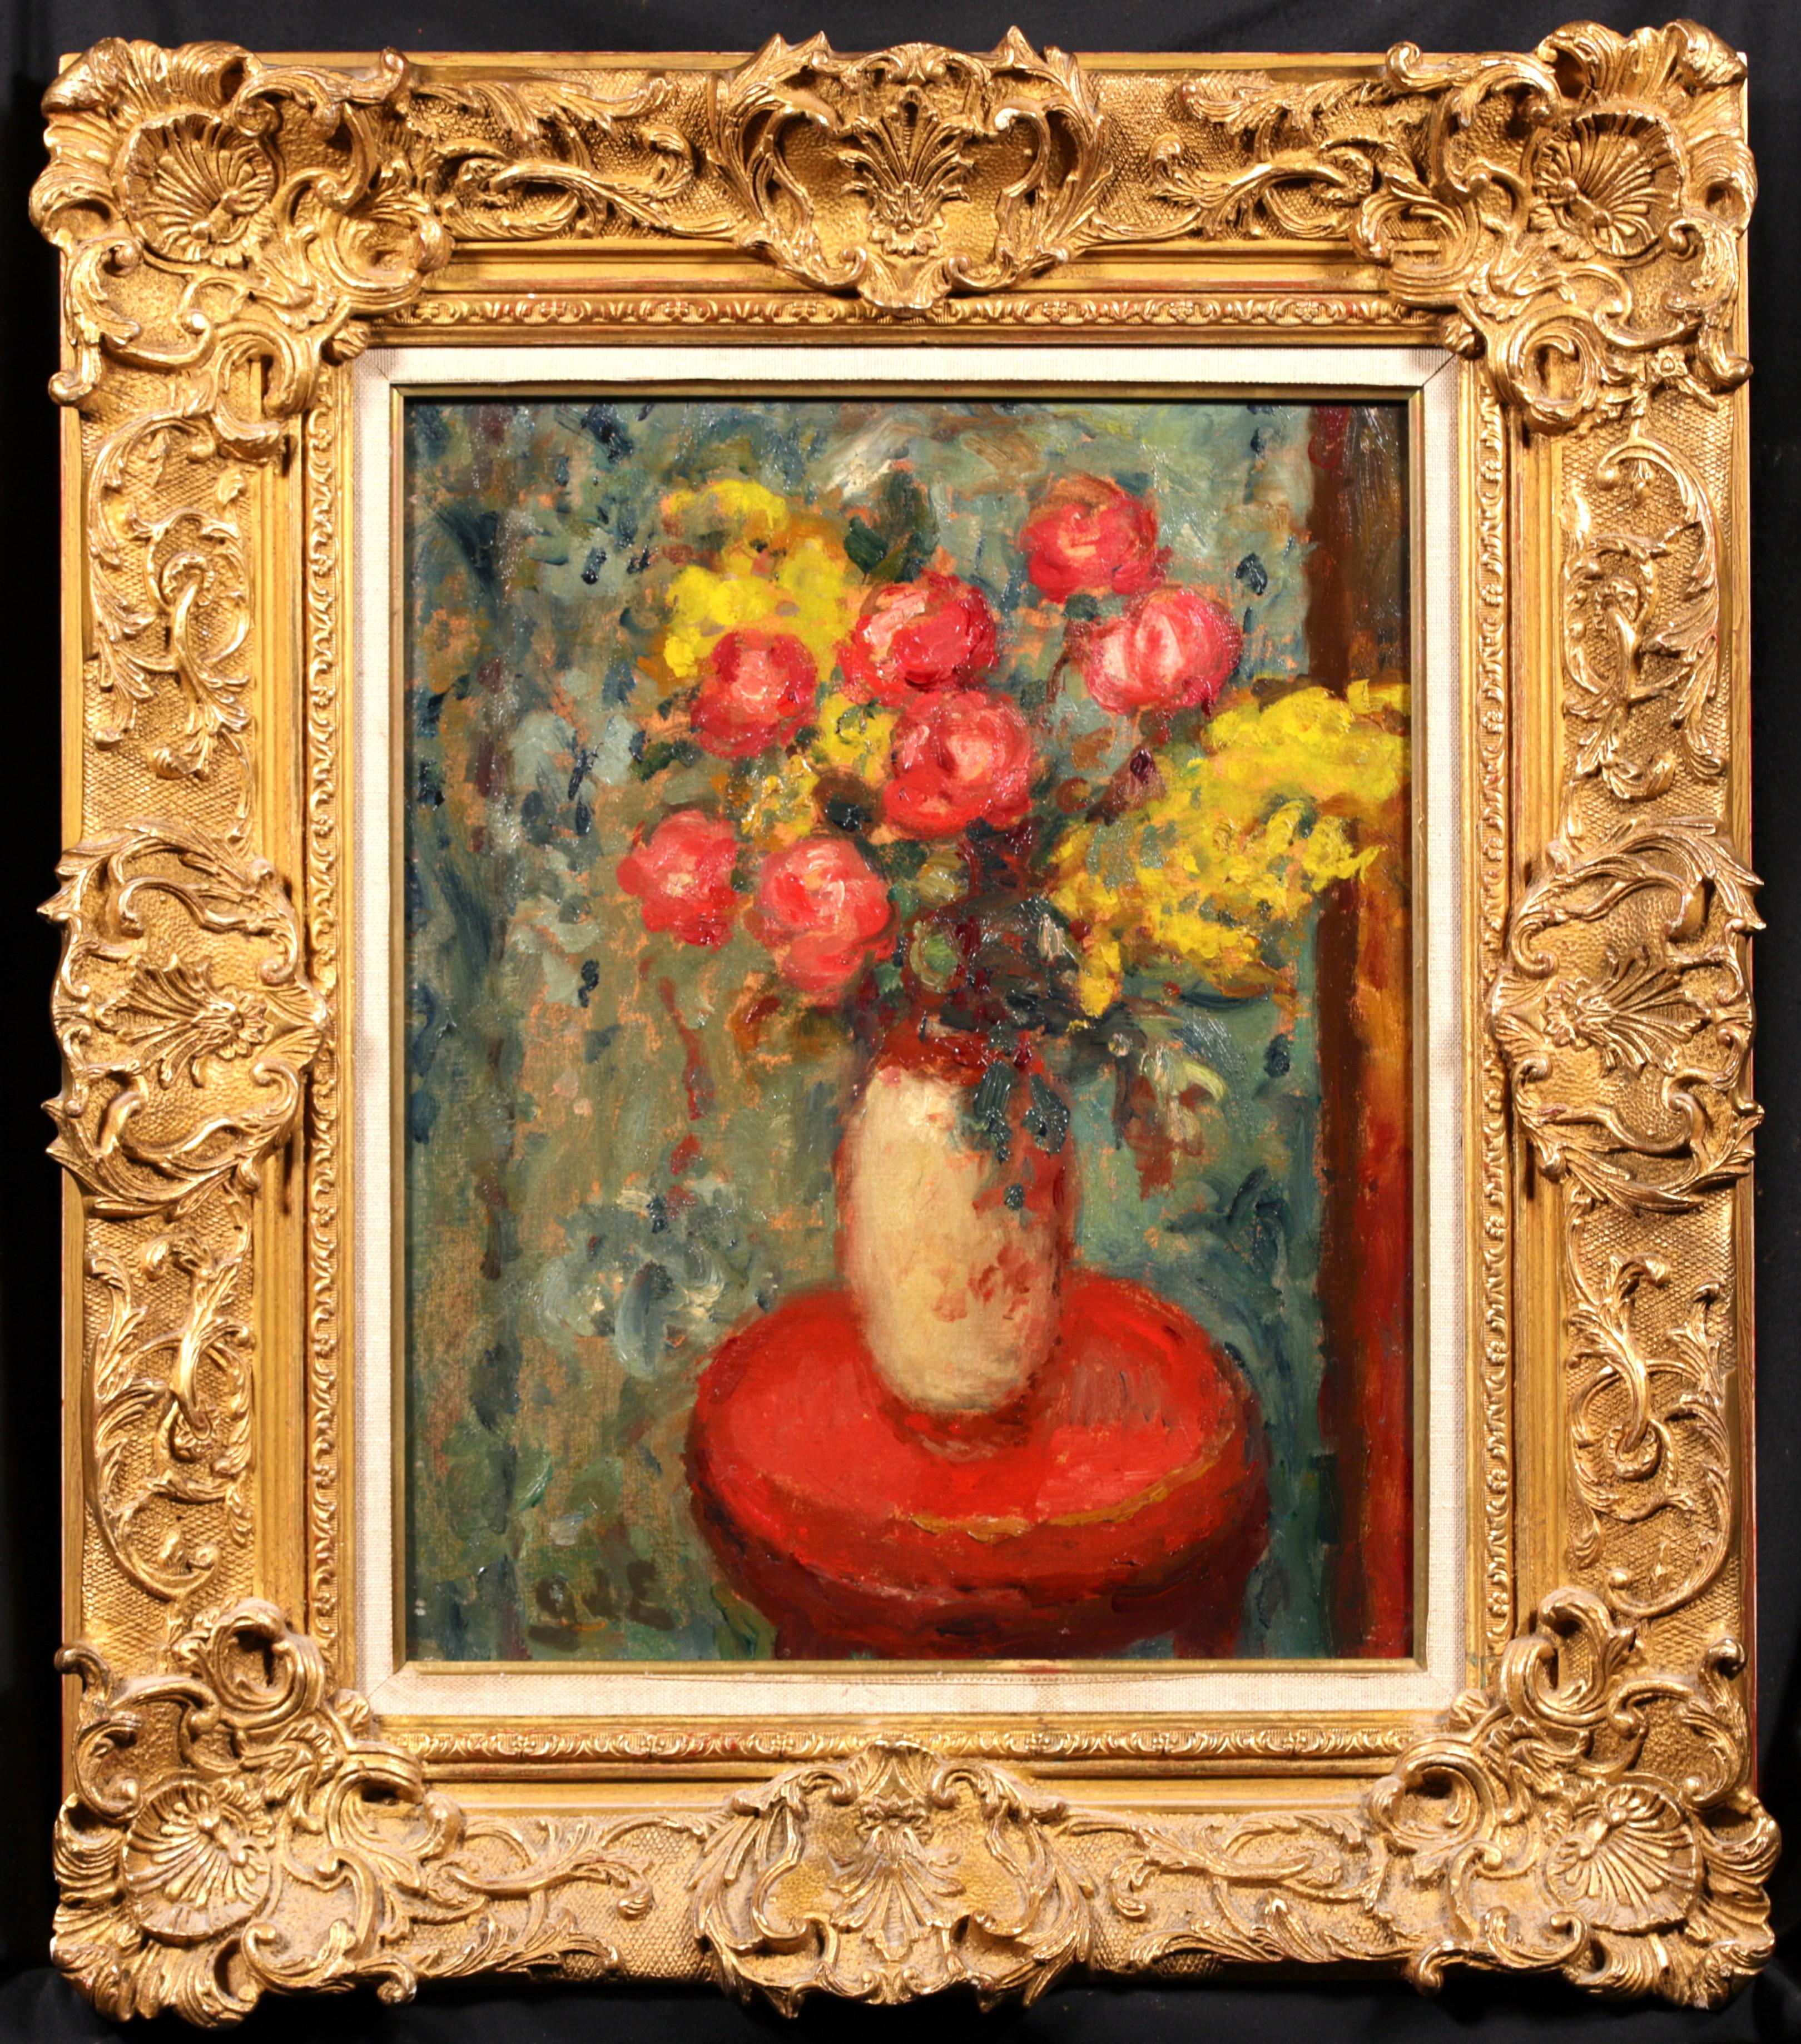 Vase de Fleurs - Nature morte post-impressionniste - Peinture à l'huile - Georges D'Espagnat